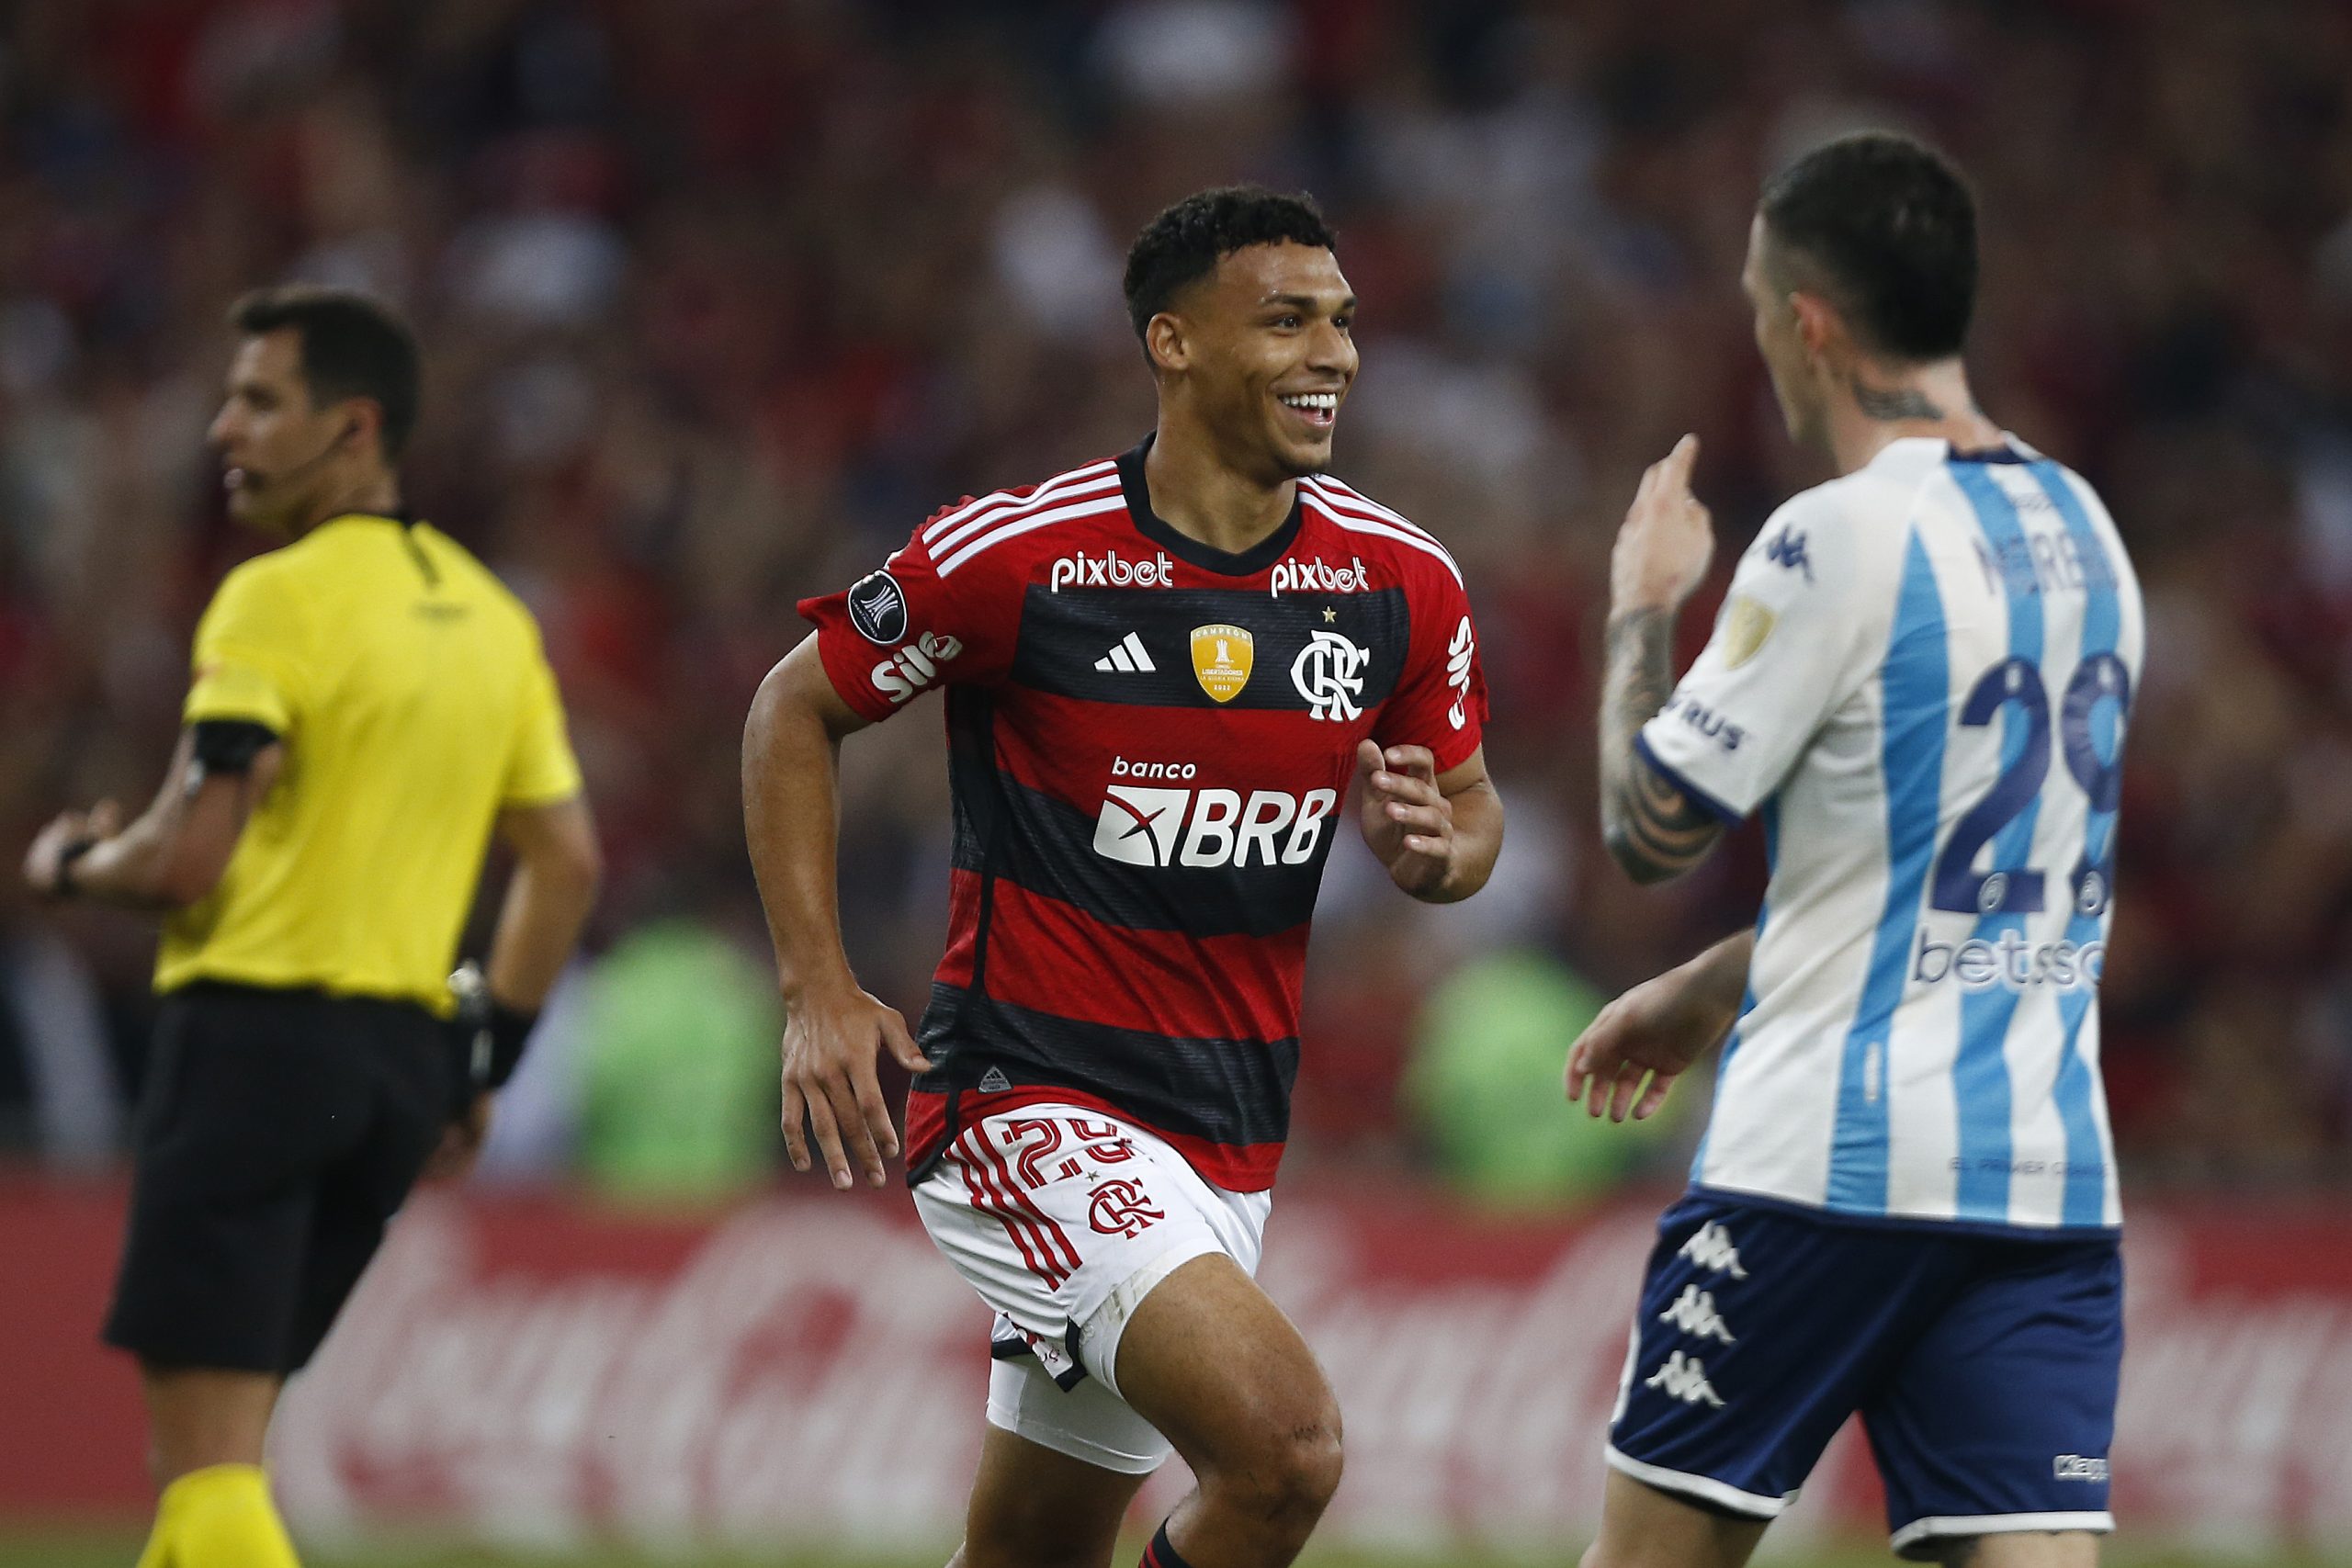 Decisivo contra o Racing, Victor Hugo celebra vitória e destaca base do Flamengo